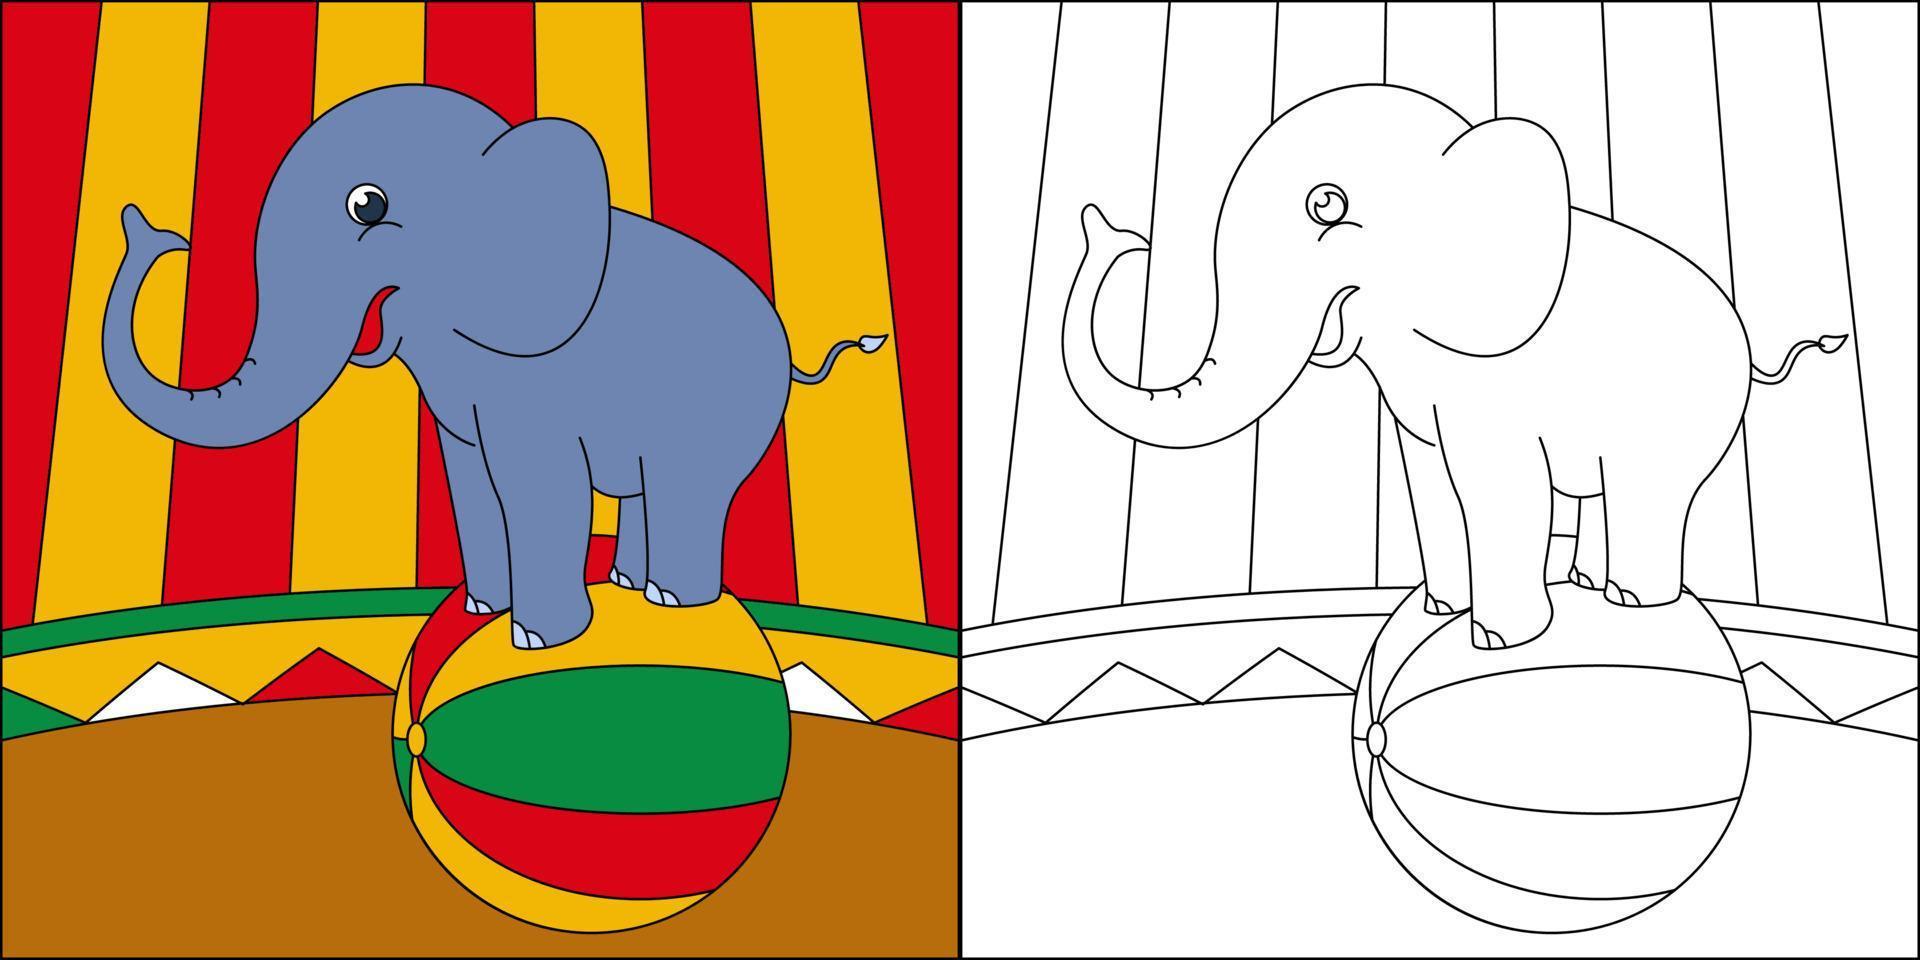 elefantenzirkusshow geeignet für kinderfarbseitenvektorillustration vektor